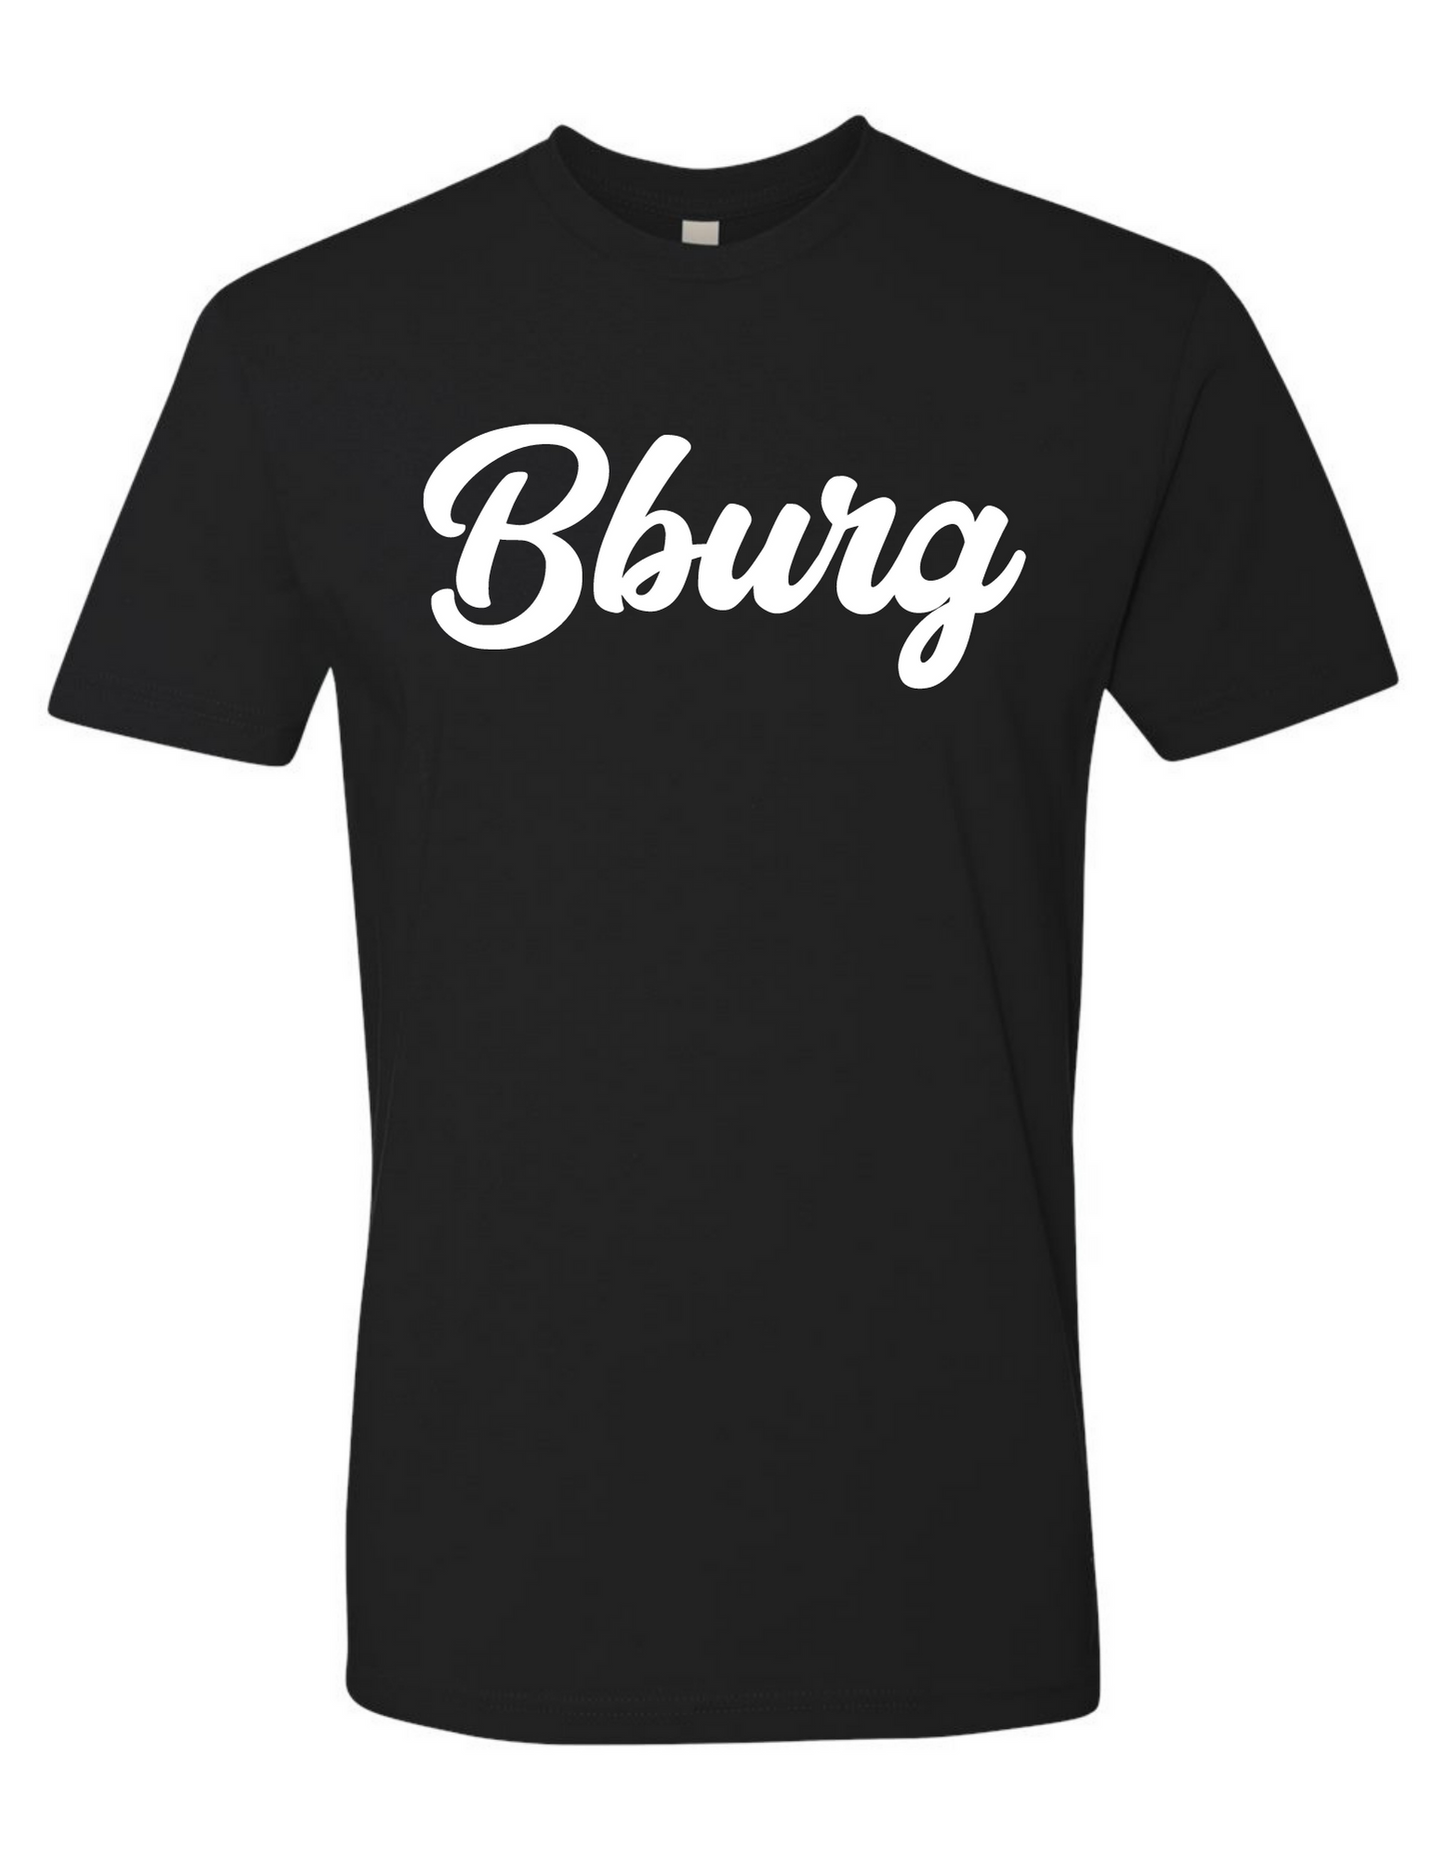 Bburg Hometown Shirt